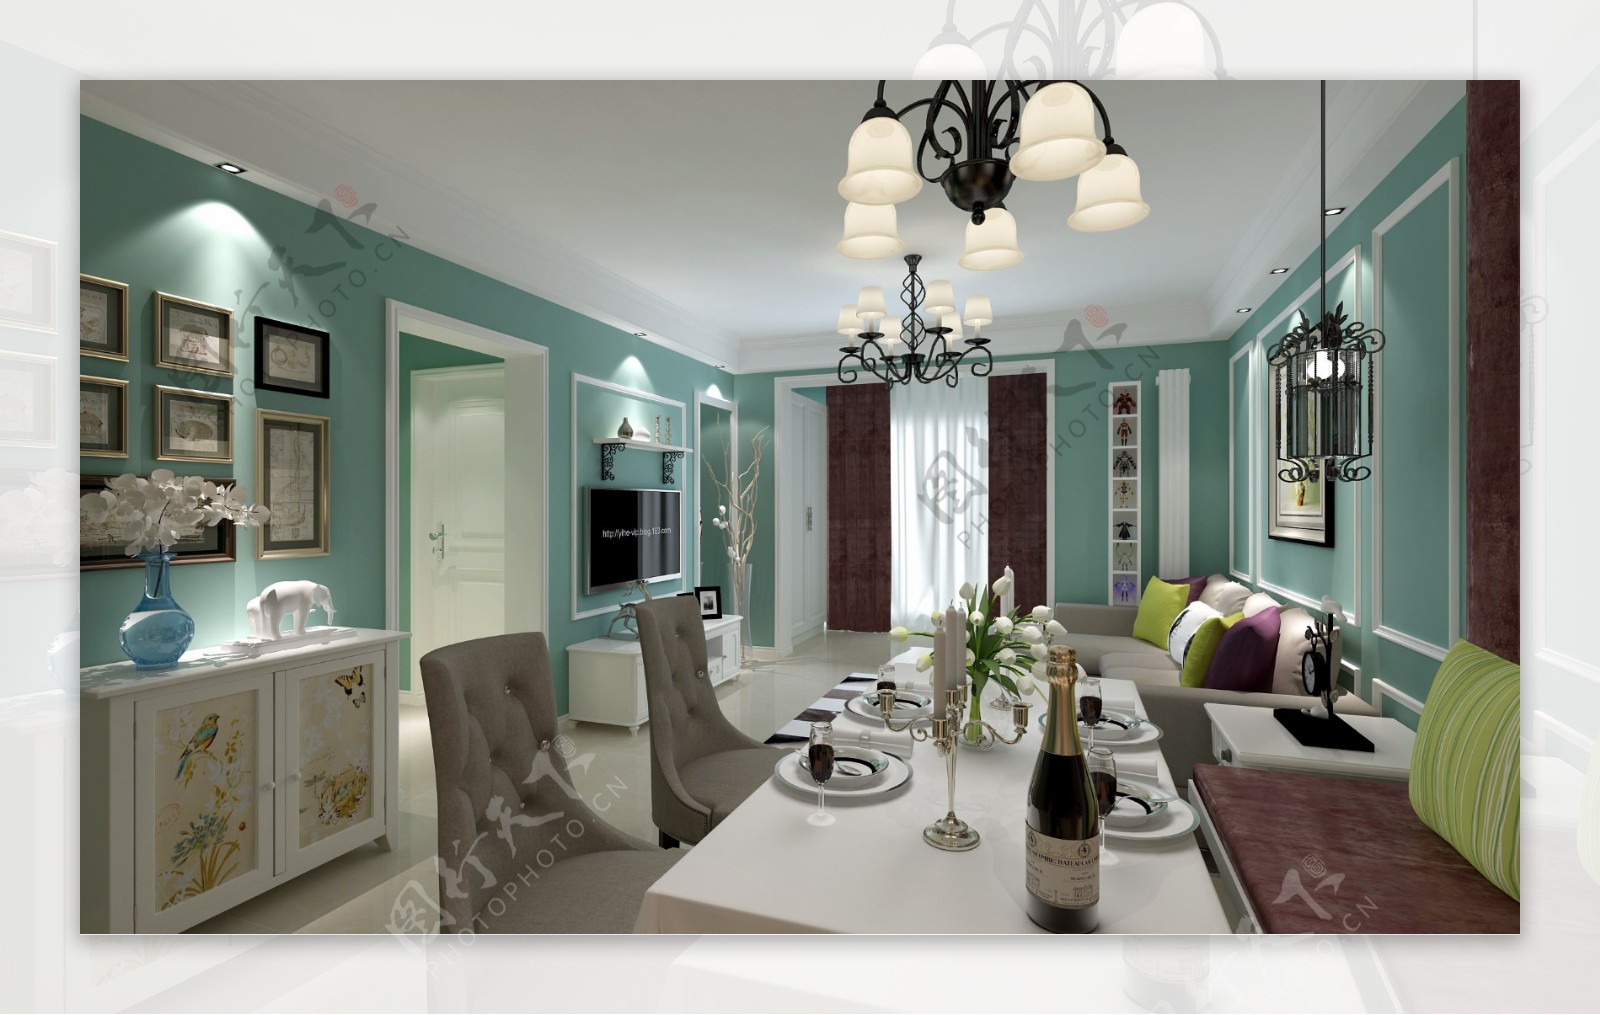 美式客厅薄荷绿墙面装饰室内装修效果图